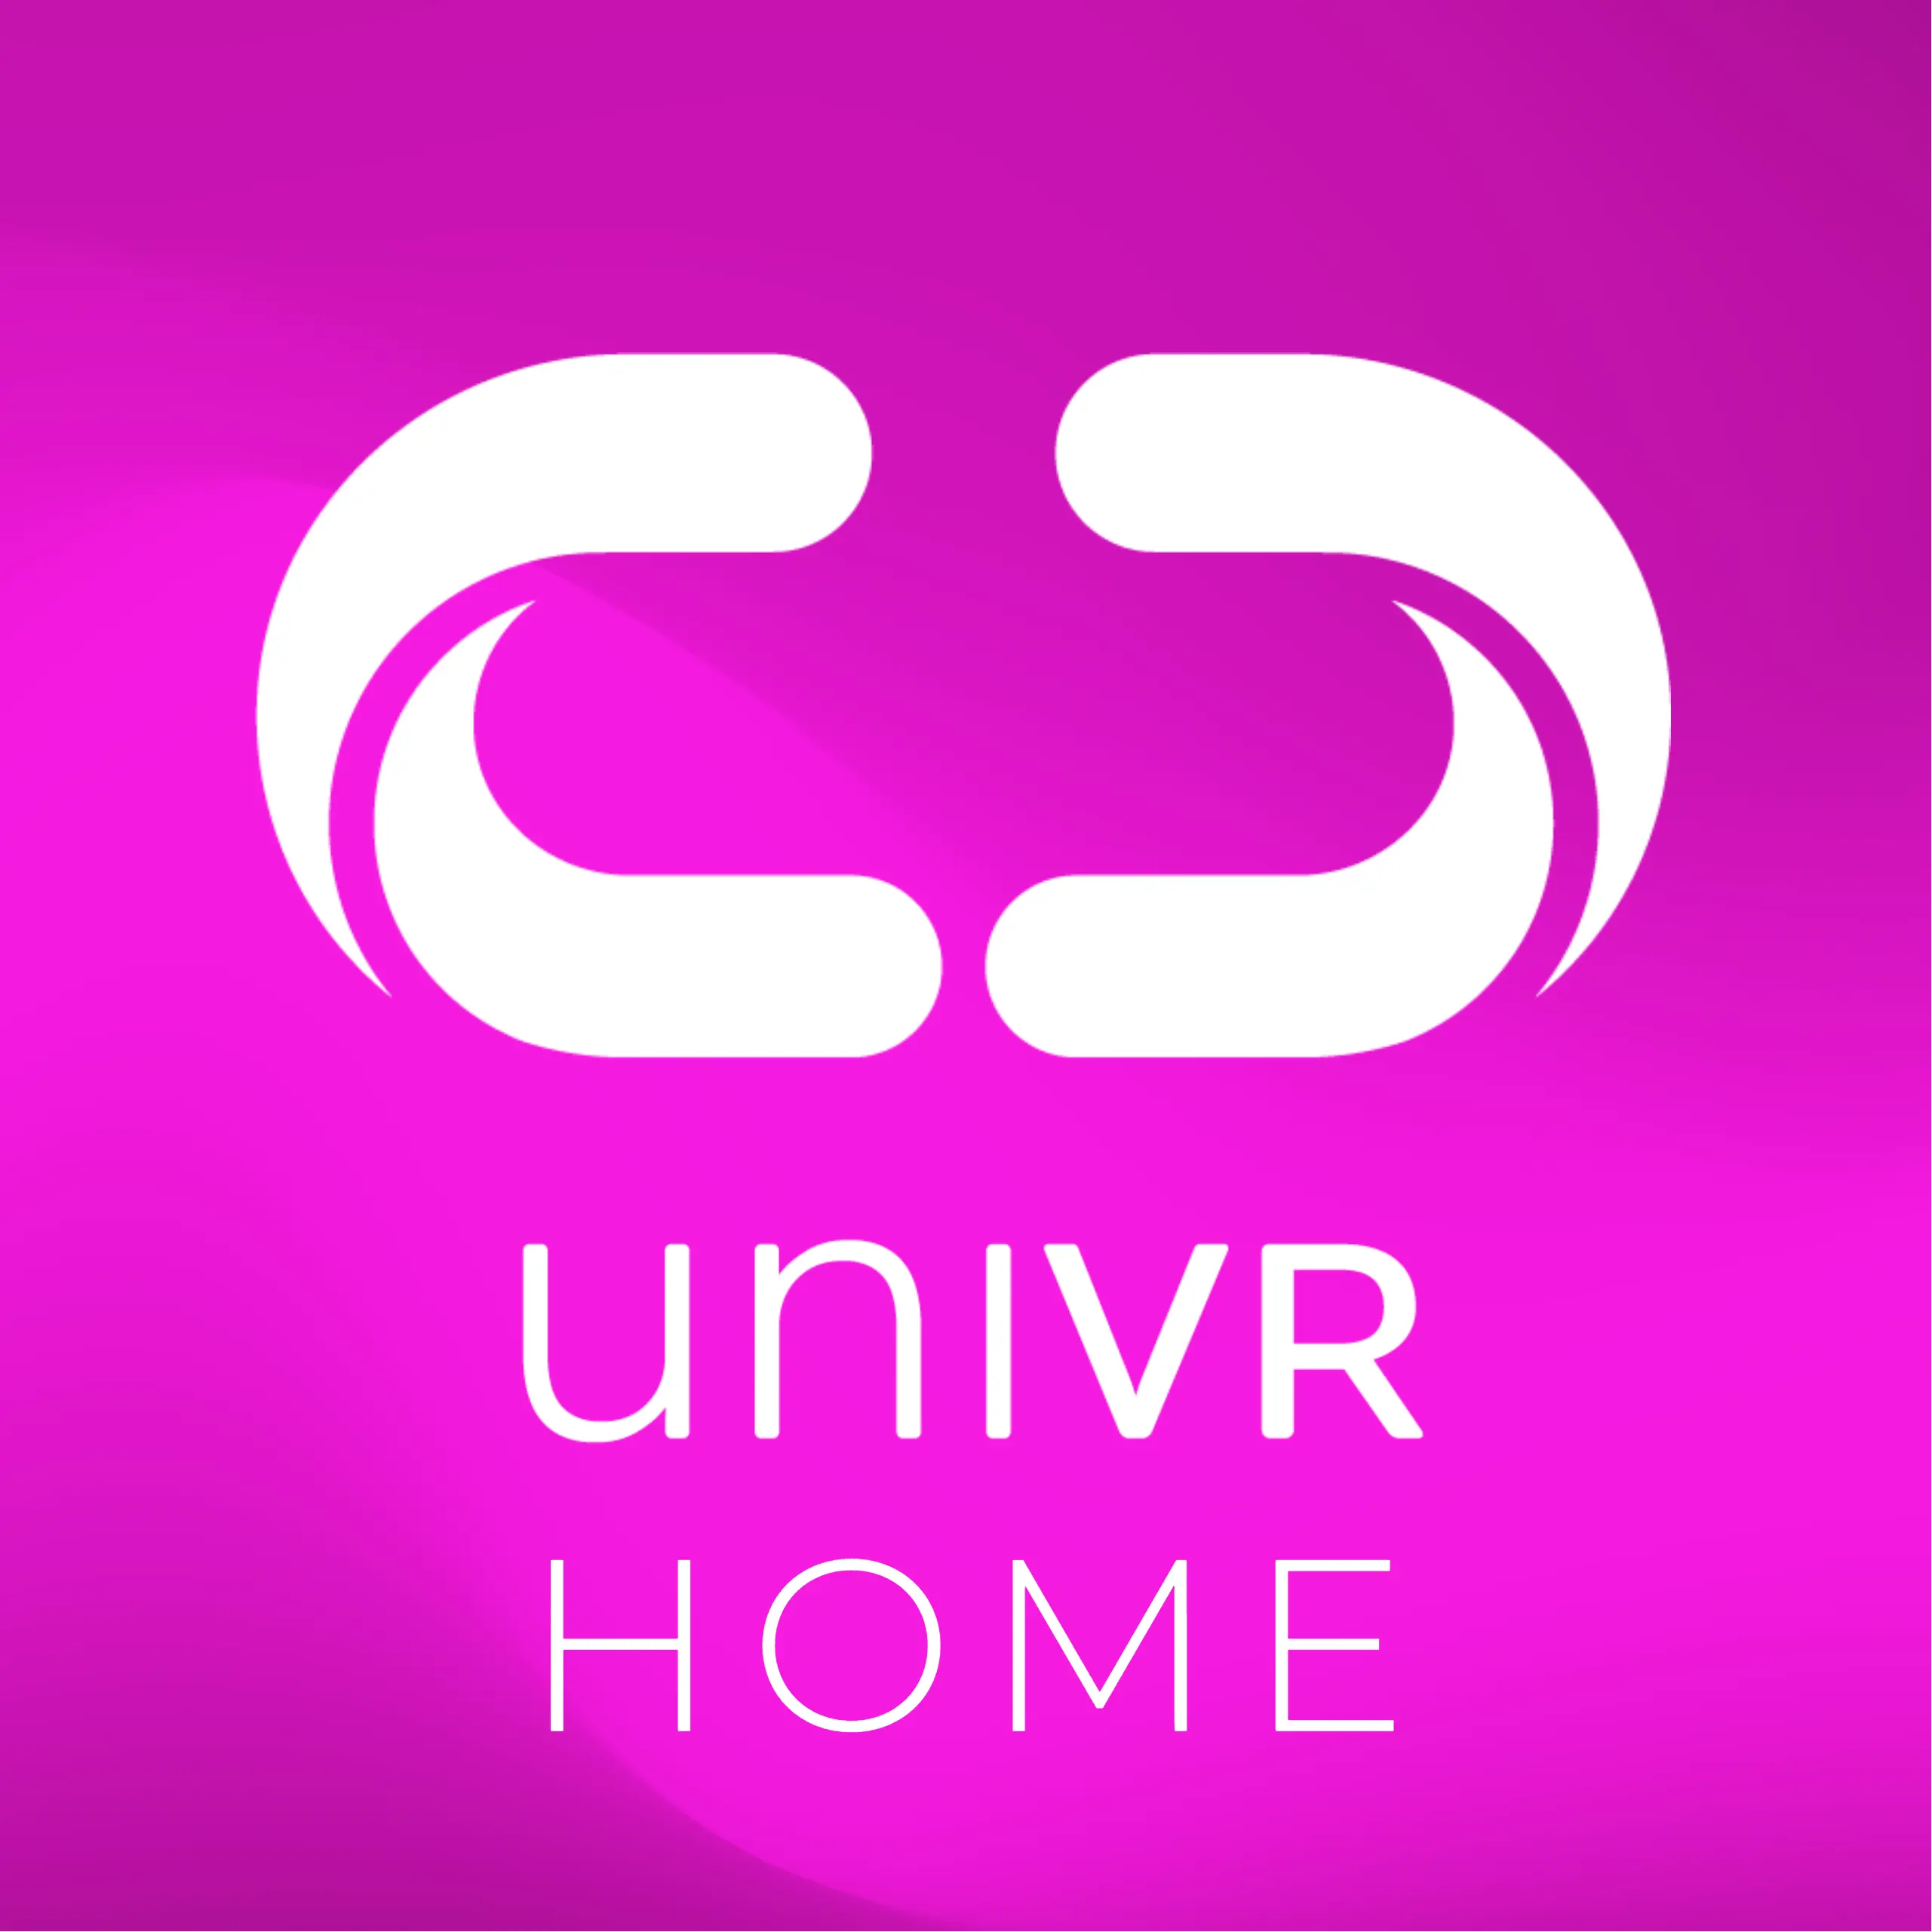 UniVR Home - outil pour faciliter la mise en oeuvre de la vr en entreprise